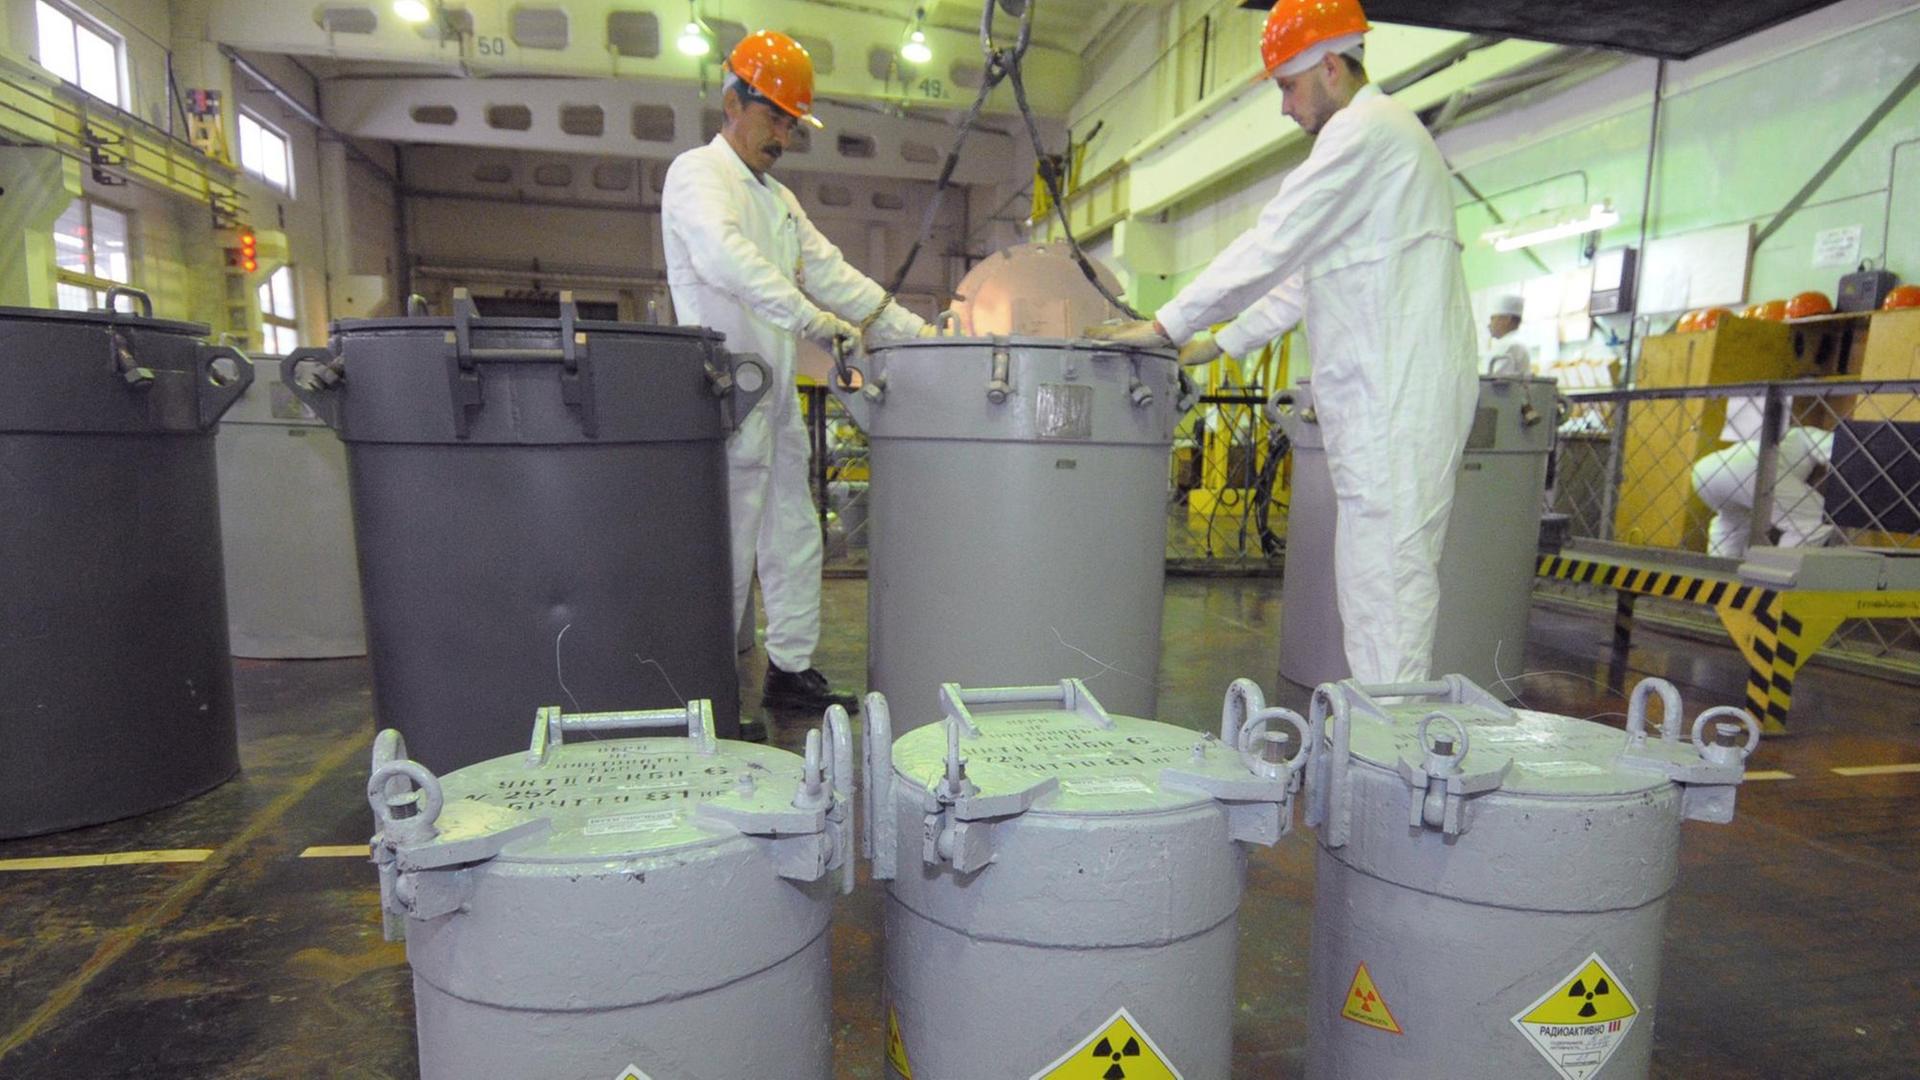 Mitarbeiter in der russischen kerntechnischen Anlage Majak neben Behältnissen, die laut Kennzeichnung radioaktives Material enthalten